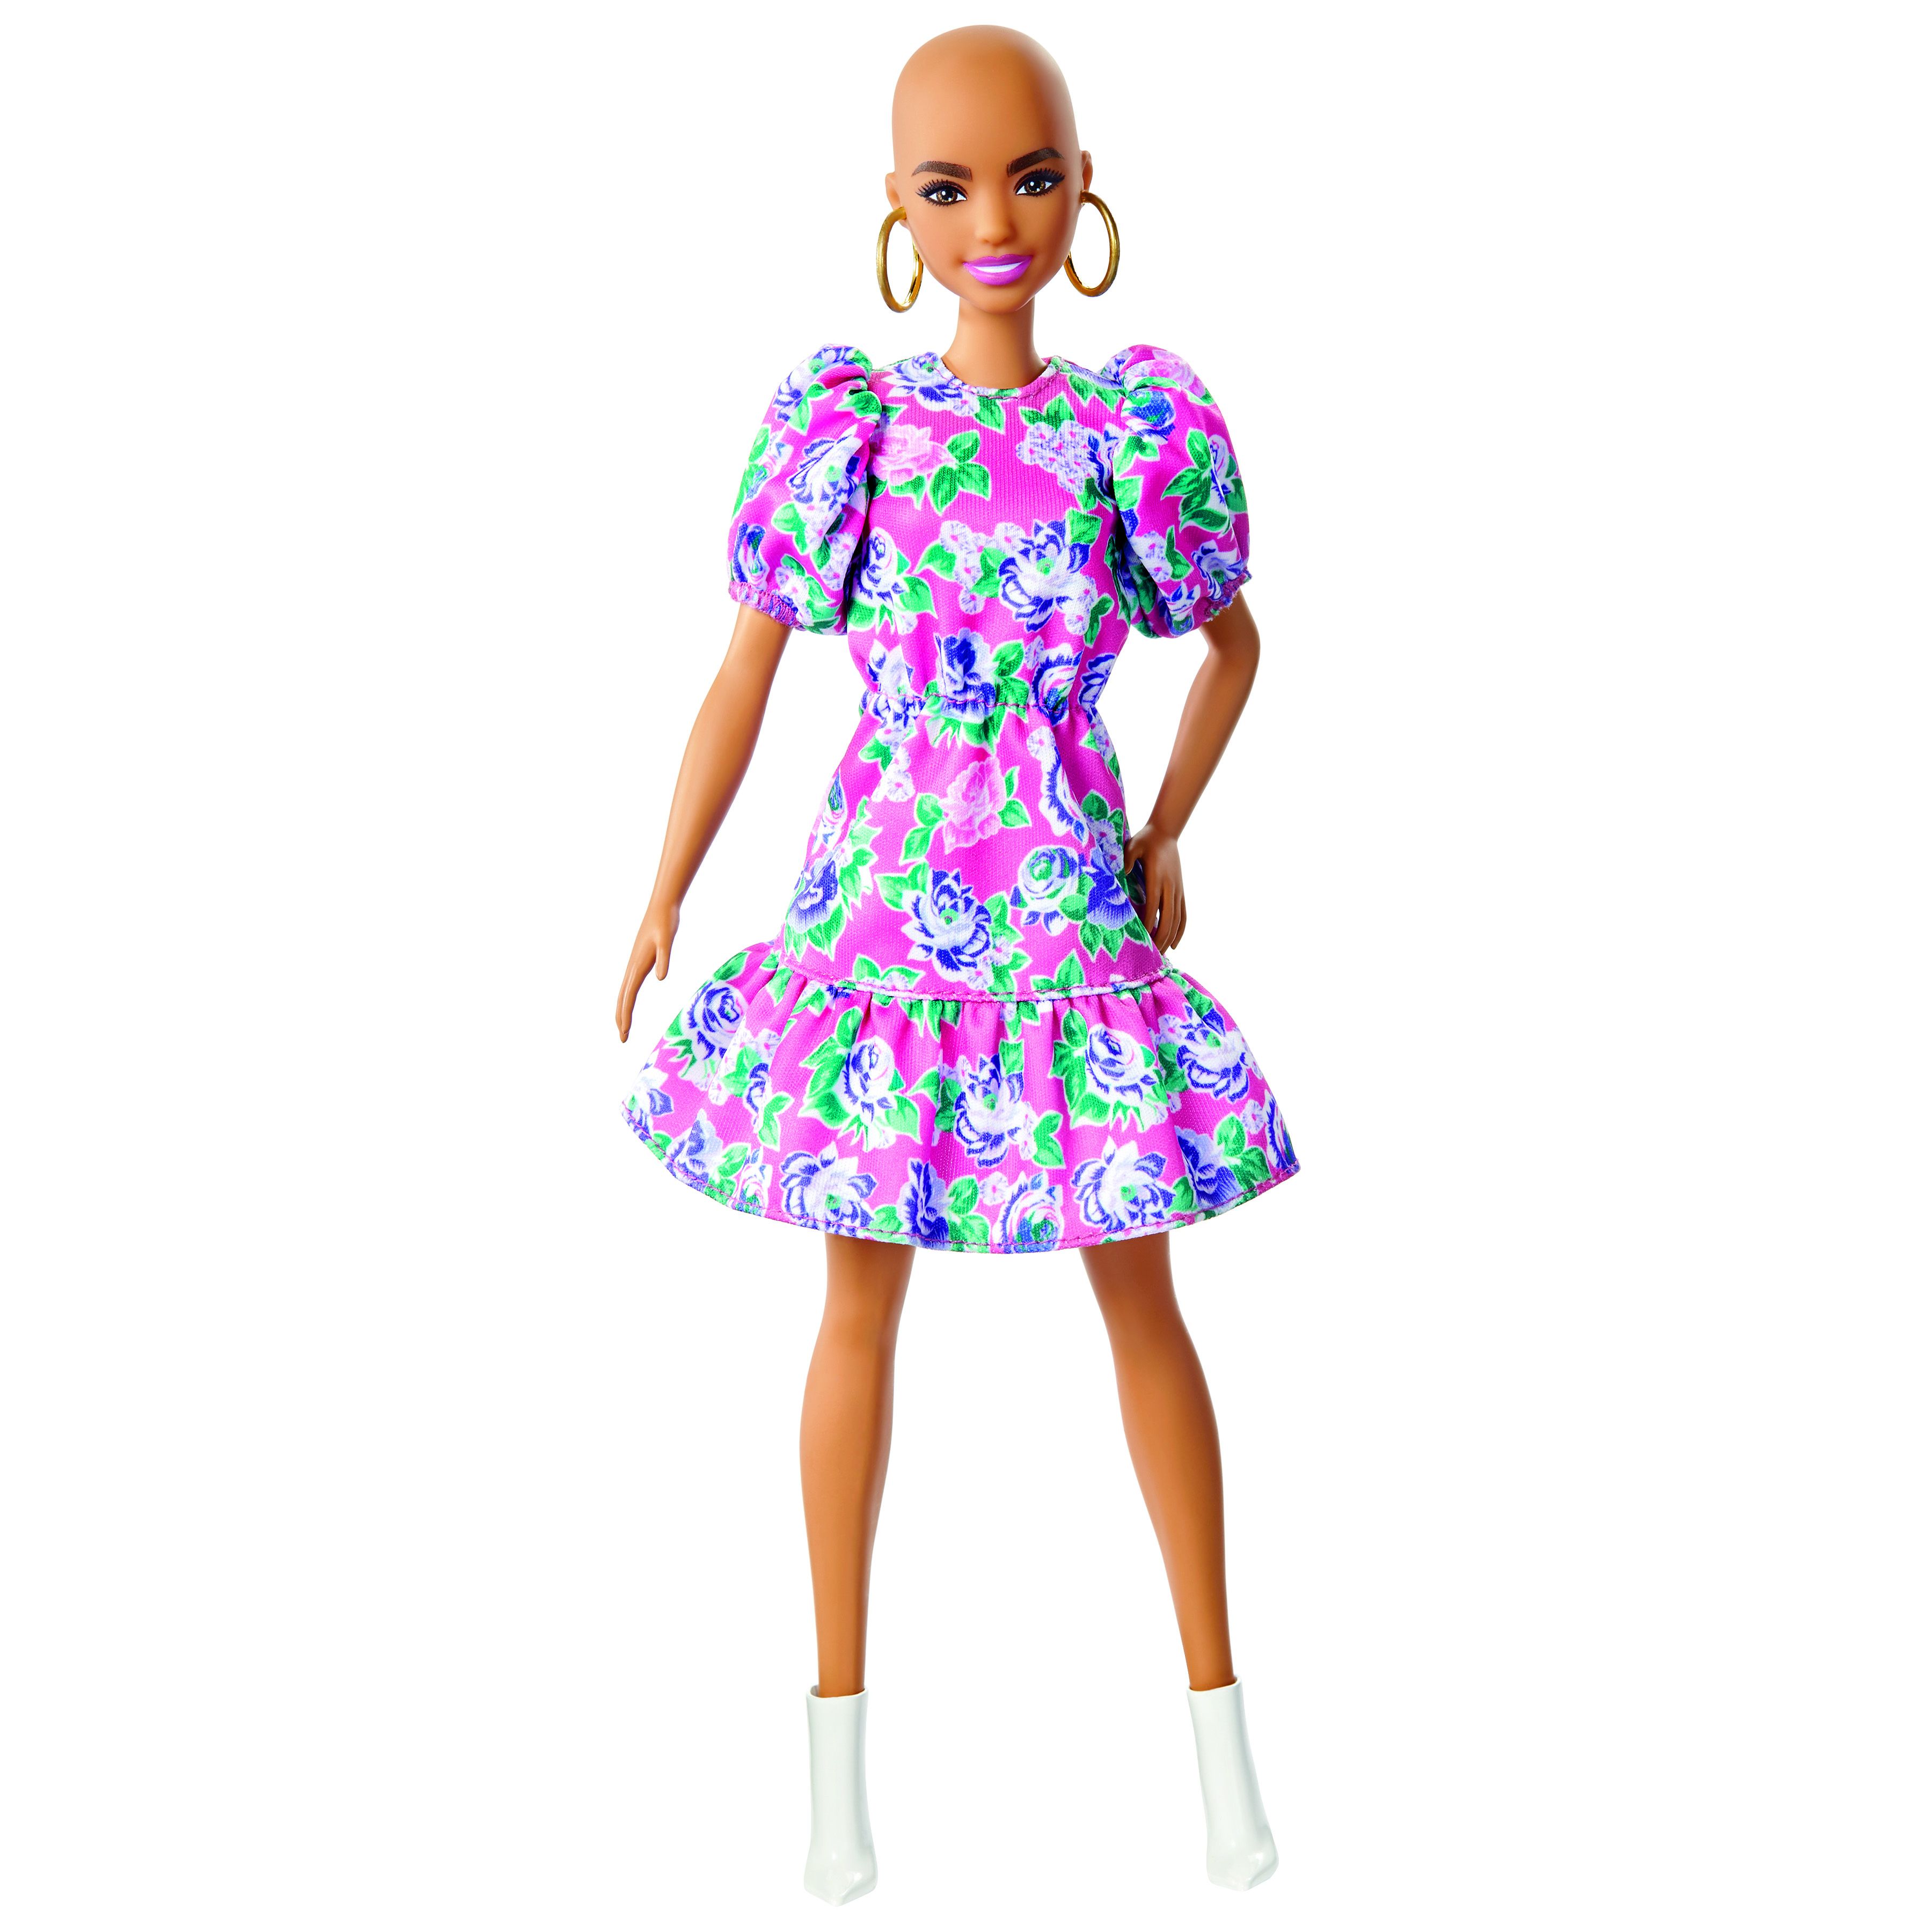 Barbie mit Glatze.jpg